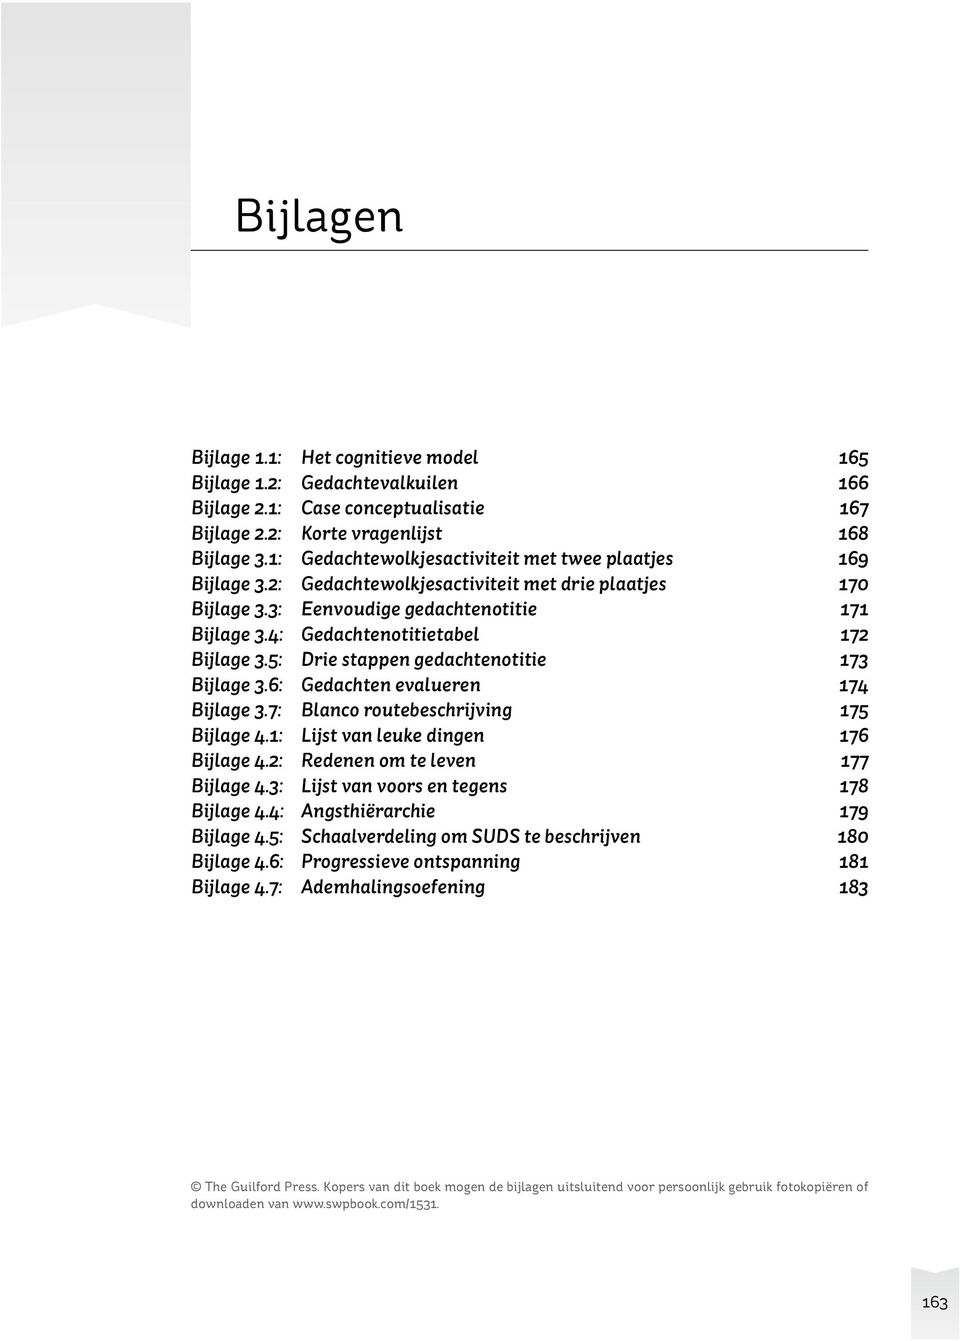 Bijlage 1.1. Het cognitieve model. Automatische gedachten en beelden - PDF  Gratis download